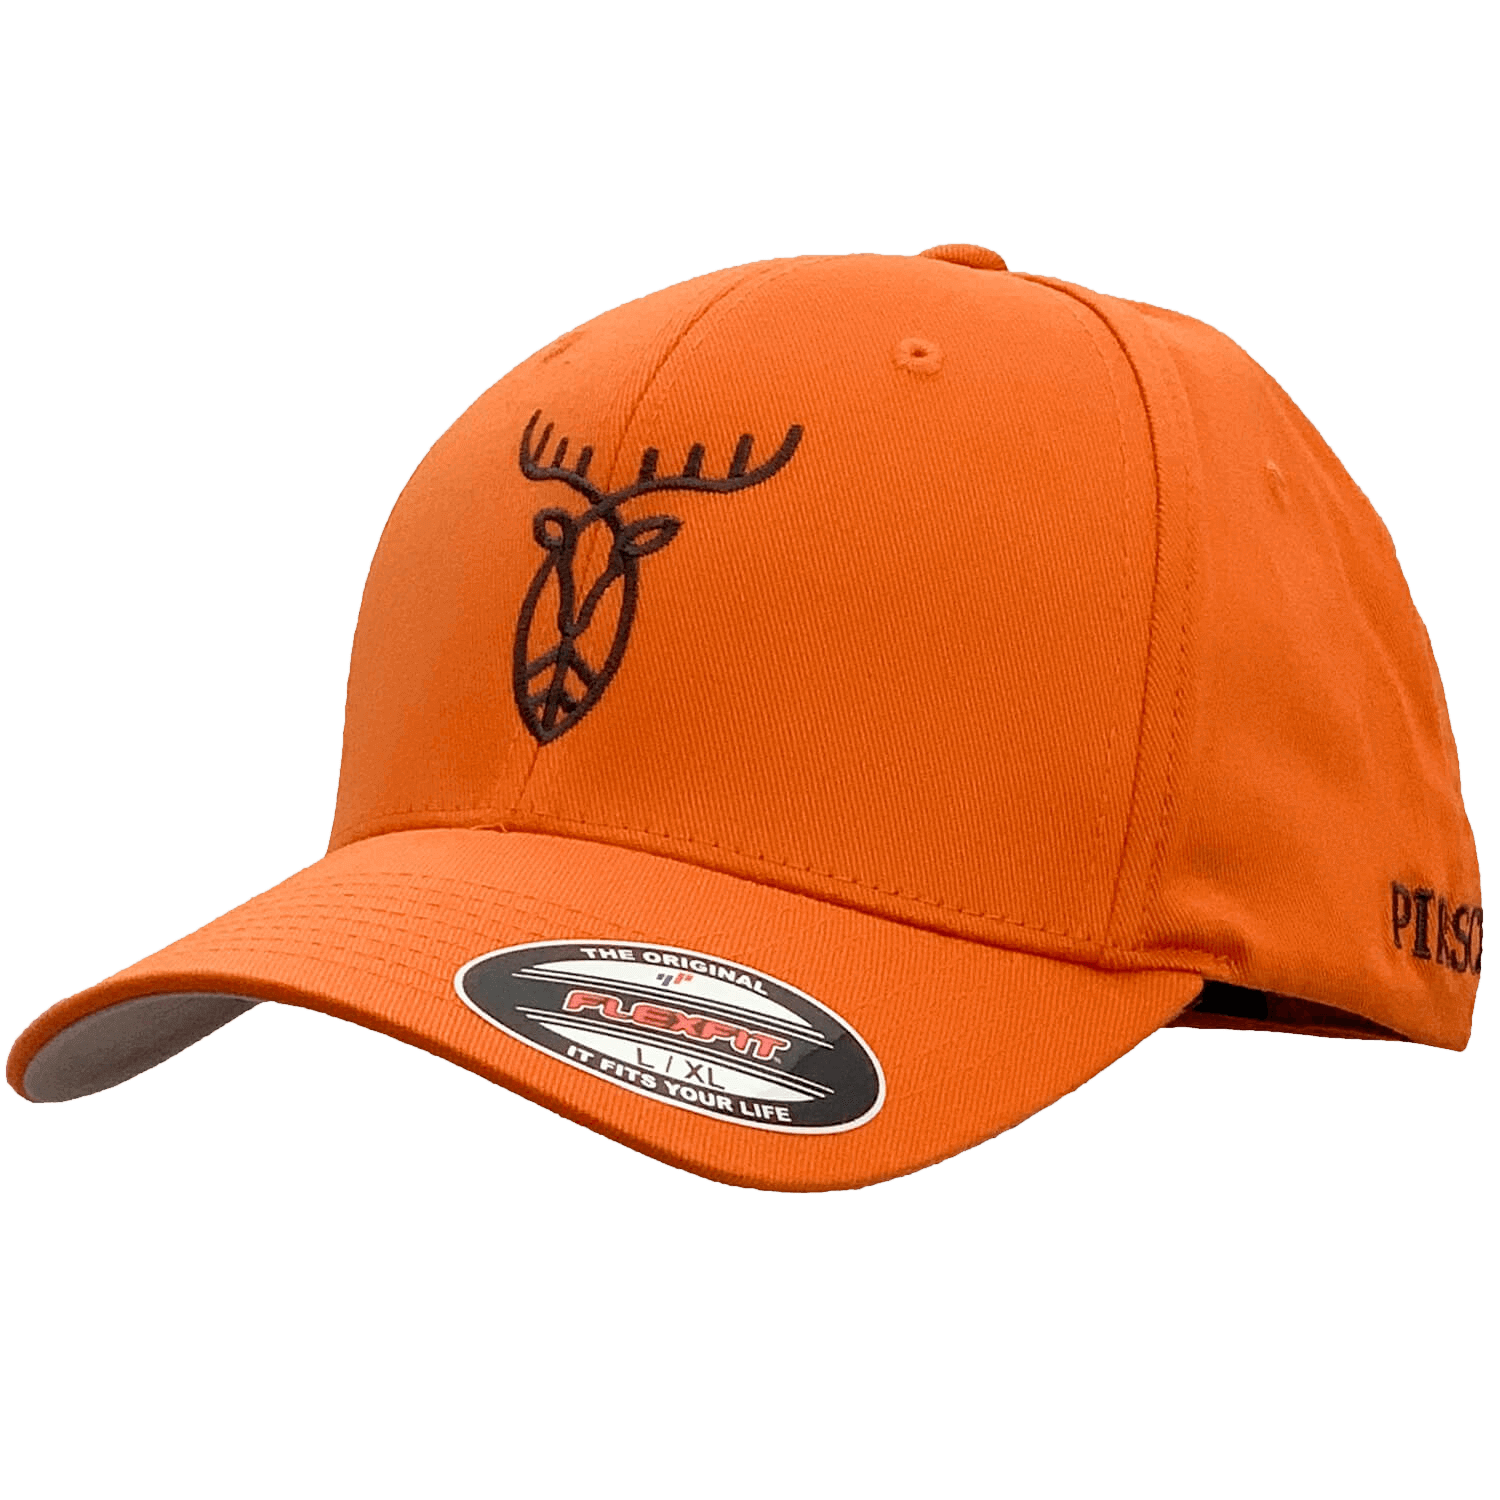 Pirscher Gear Cap Logo (Orange) - Pirscher Gear